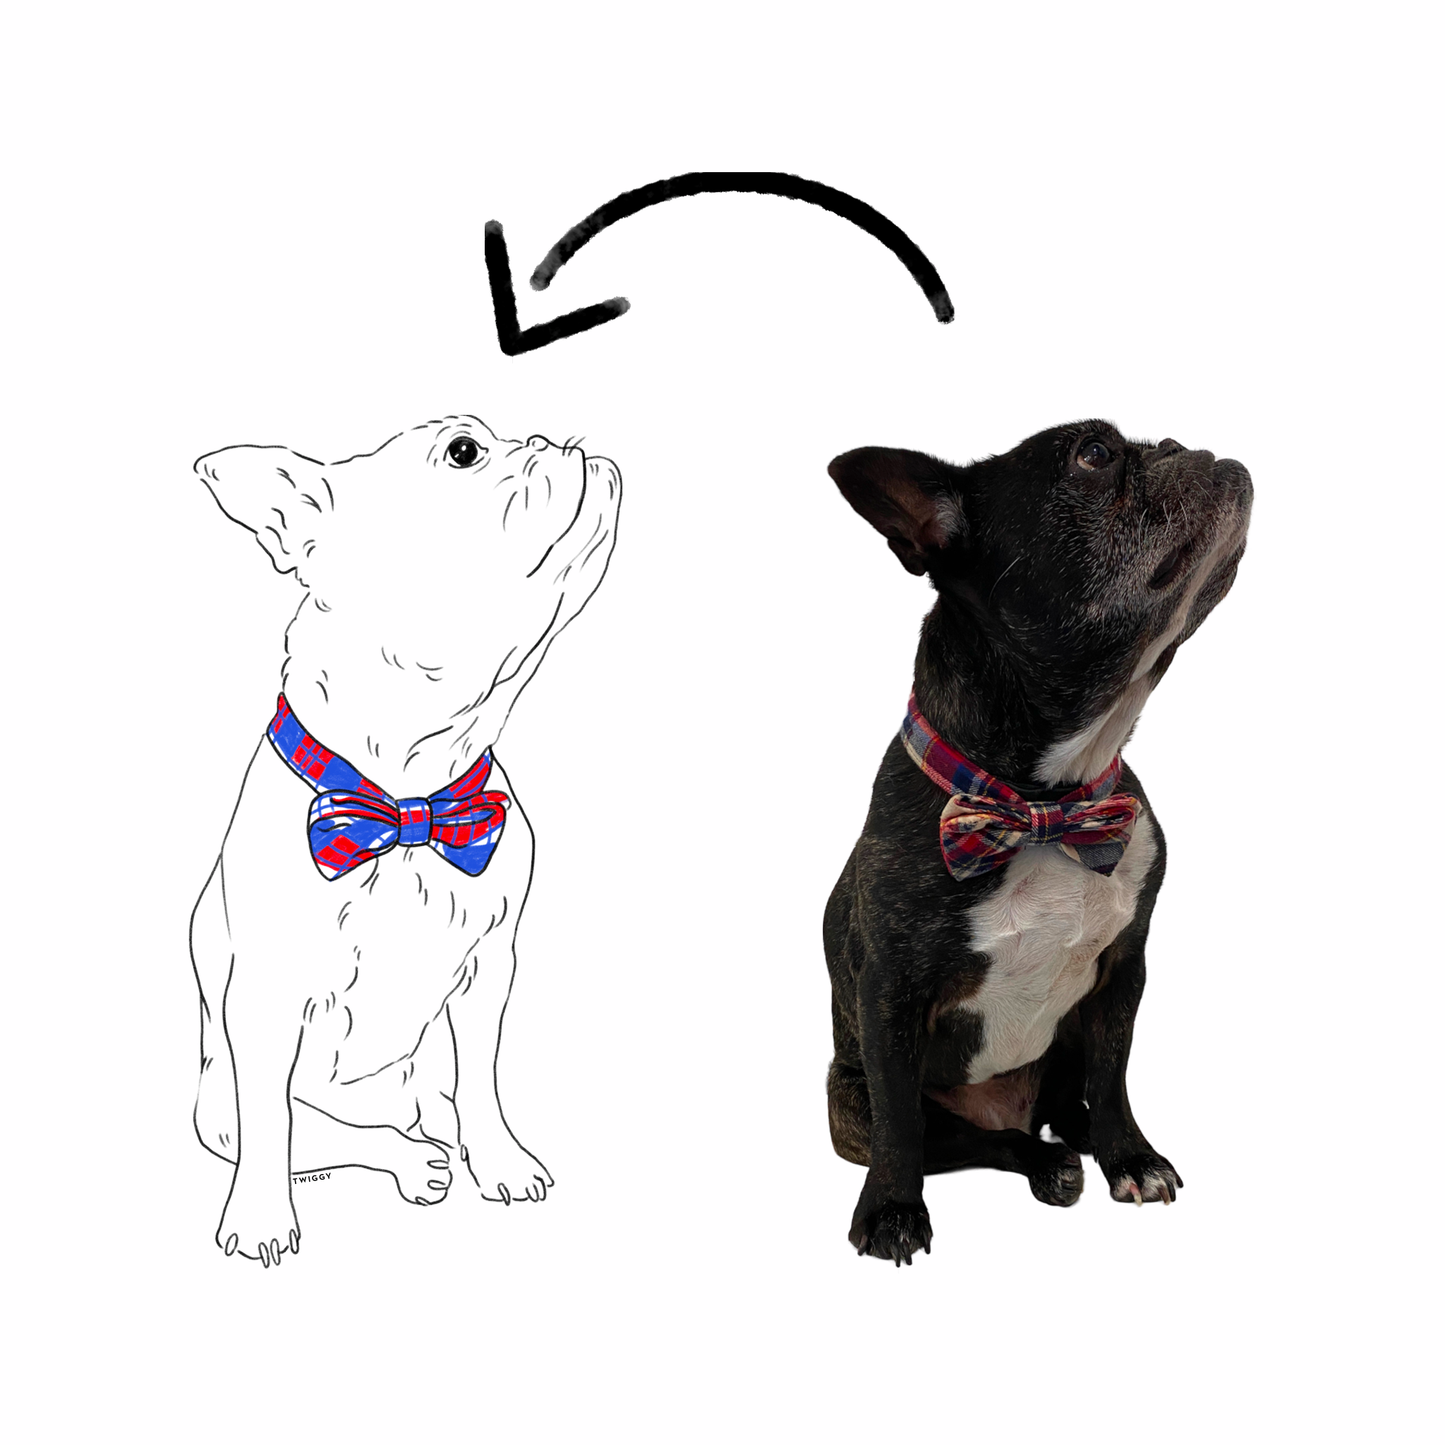 Dessin photo illustration portrait art chien boston terrier digital numérique twiggy